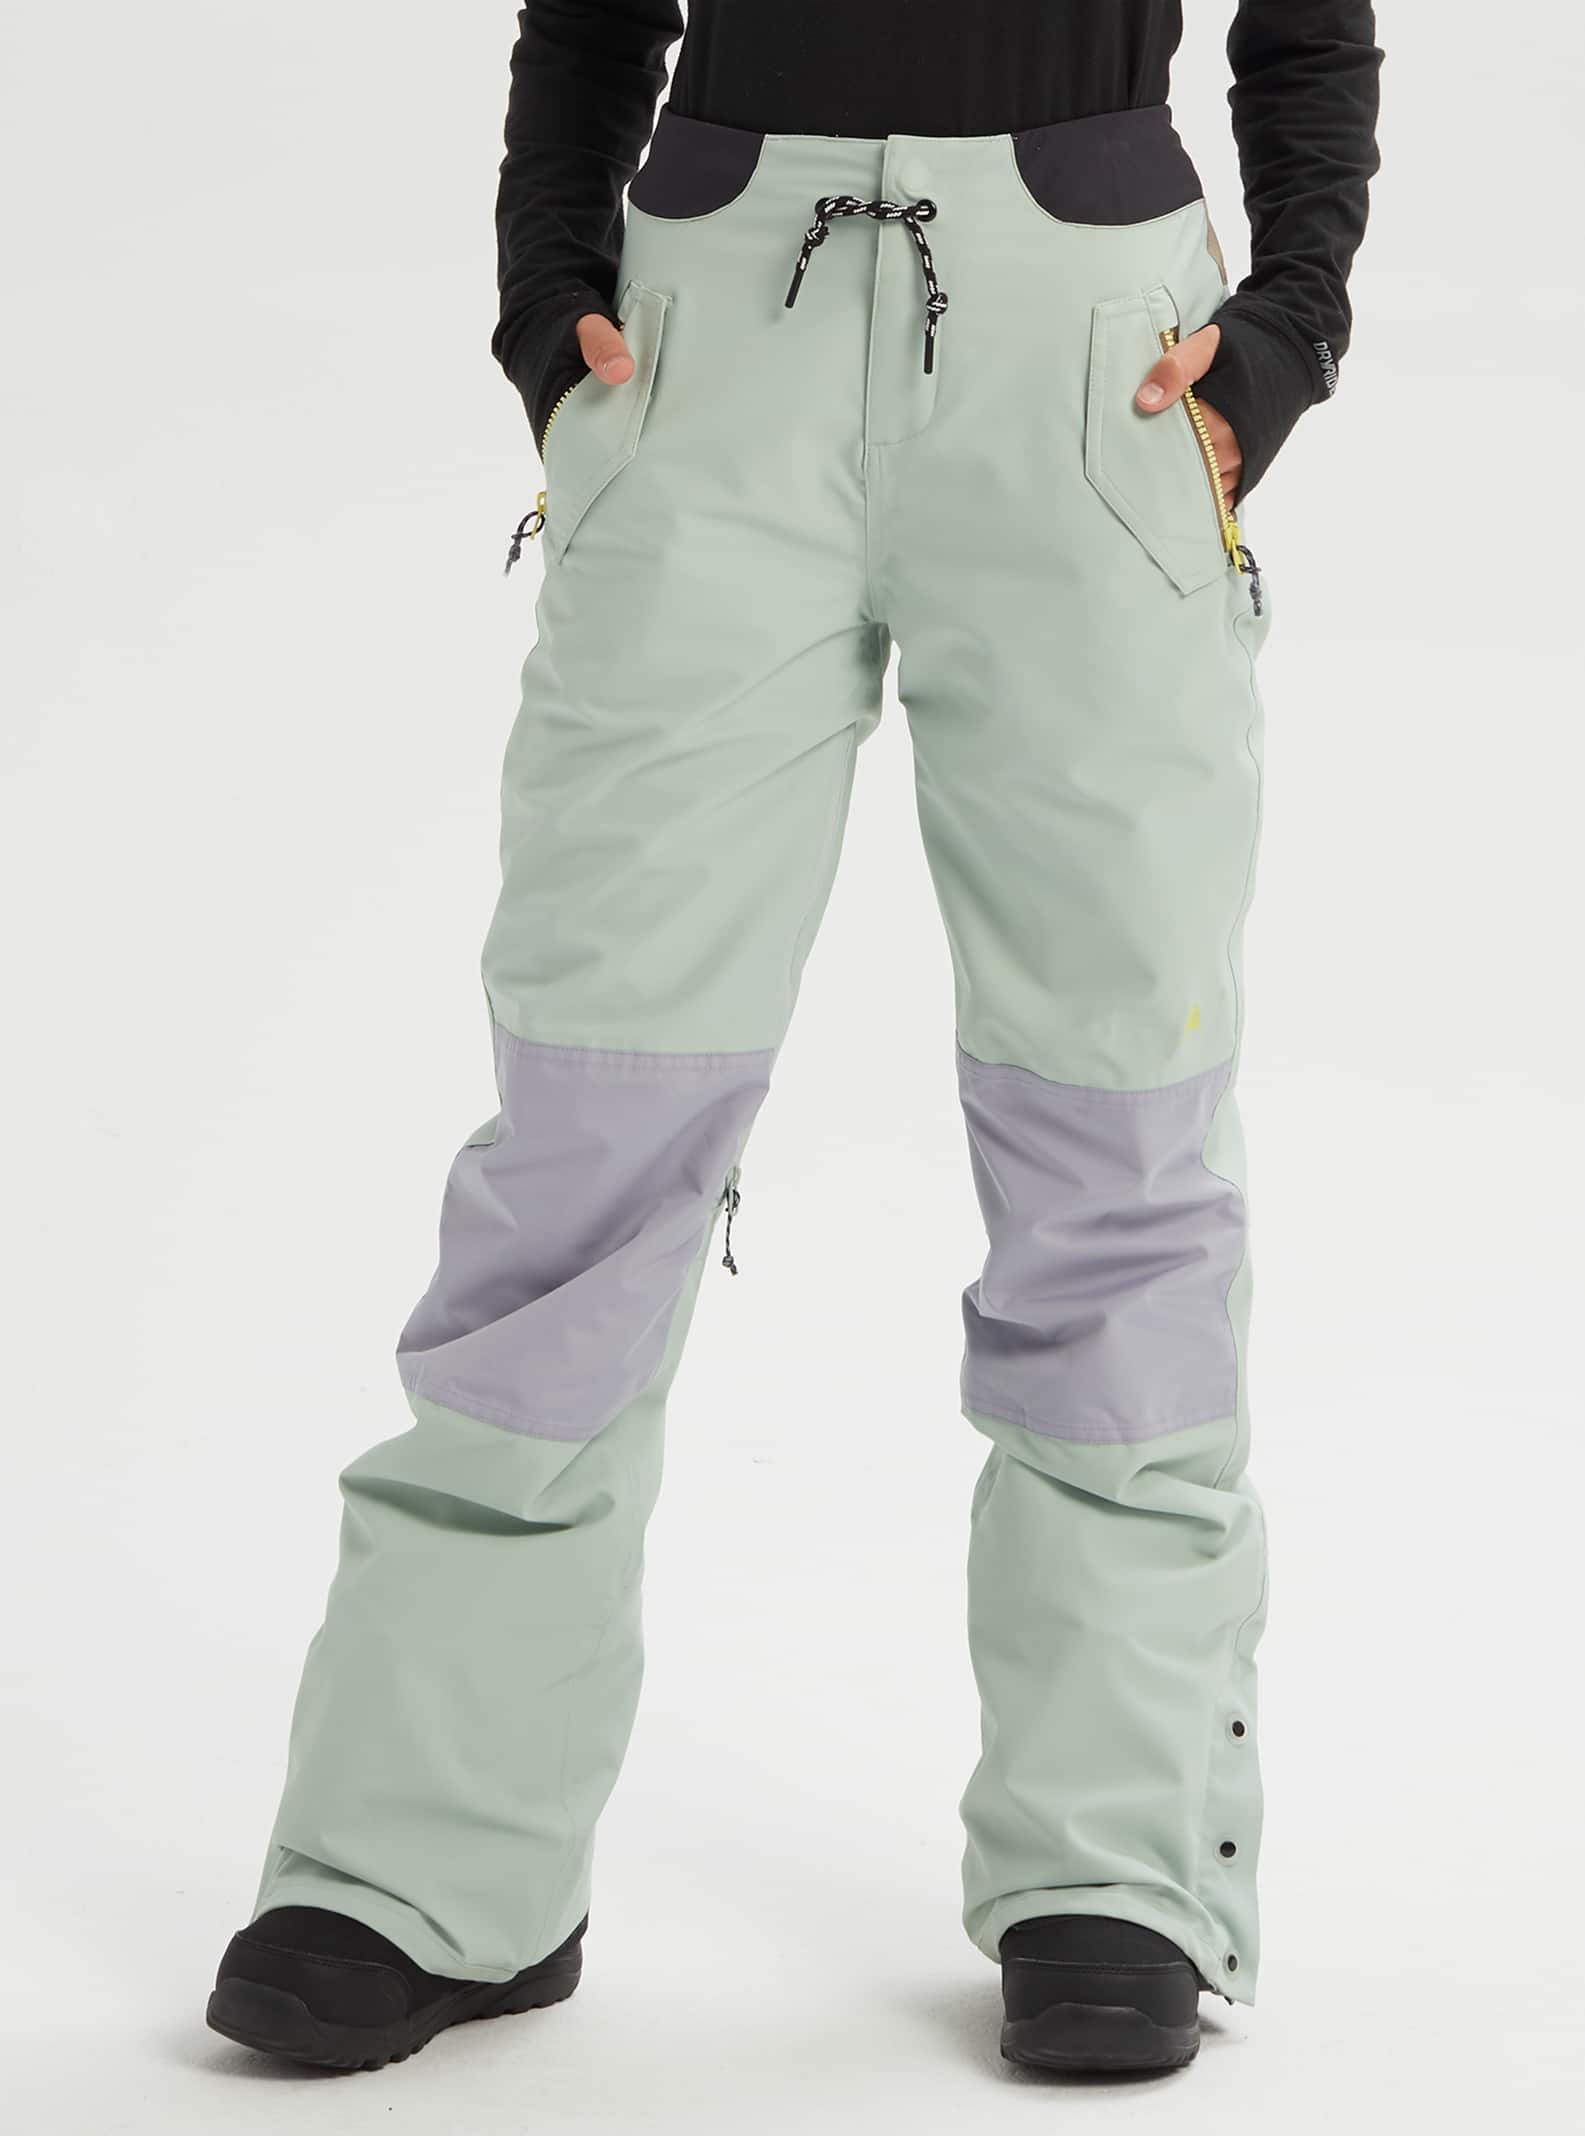 Details about   Burton Loyle Pant Damen-Snowboardhose Ski Snow Functional Trousers